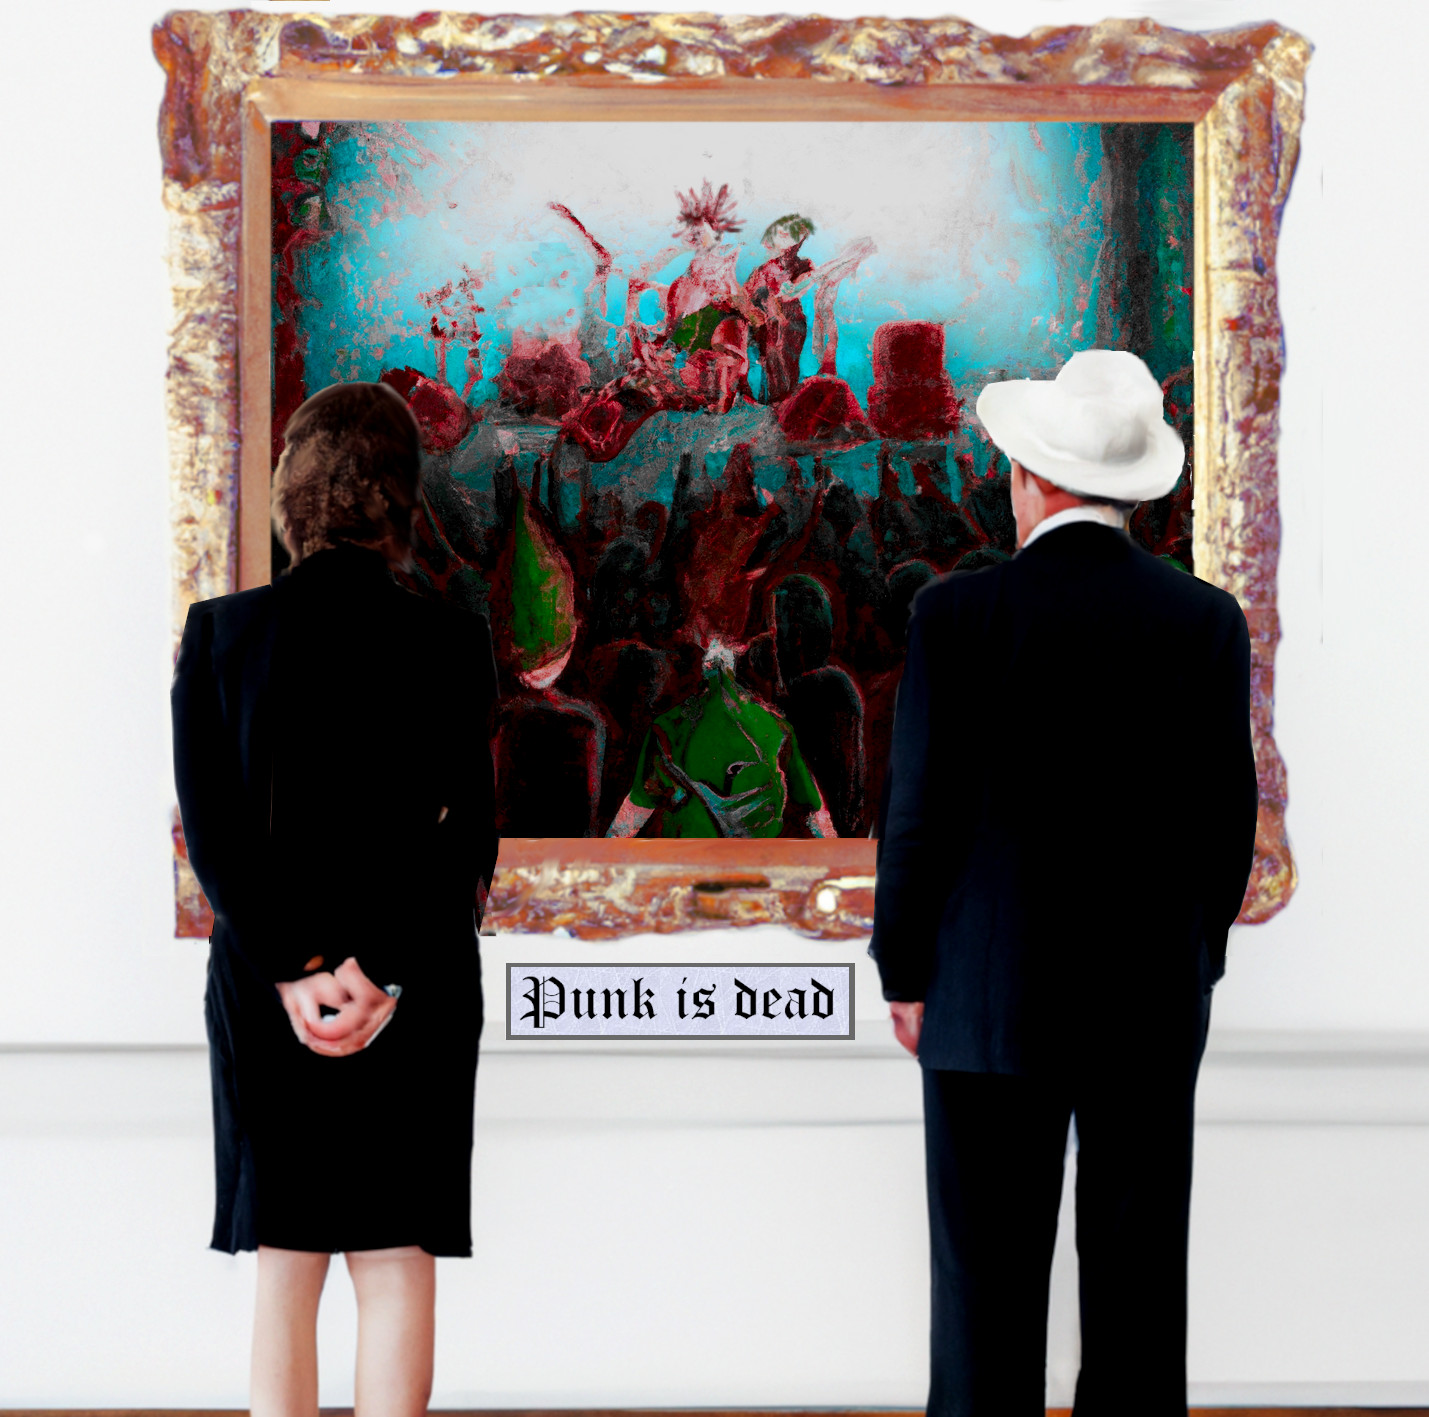 Album Cover: zwei gut gekleidete ältere Leute stehen in einem Museum und bewundern ein Ölgemälde von einem Punk-Konzert. Auf der Plakette unter dem Bild steht "Punk is Dead".